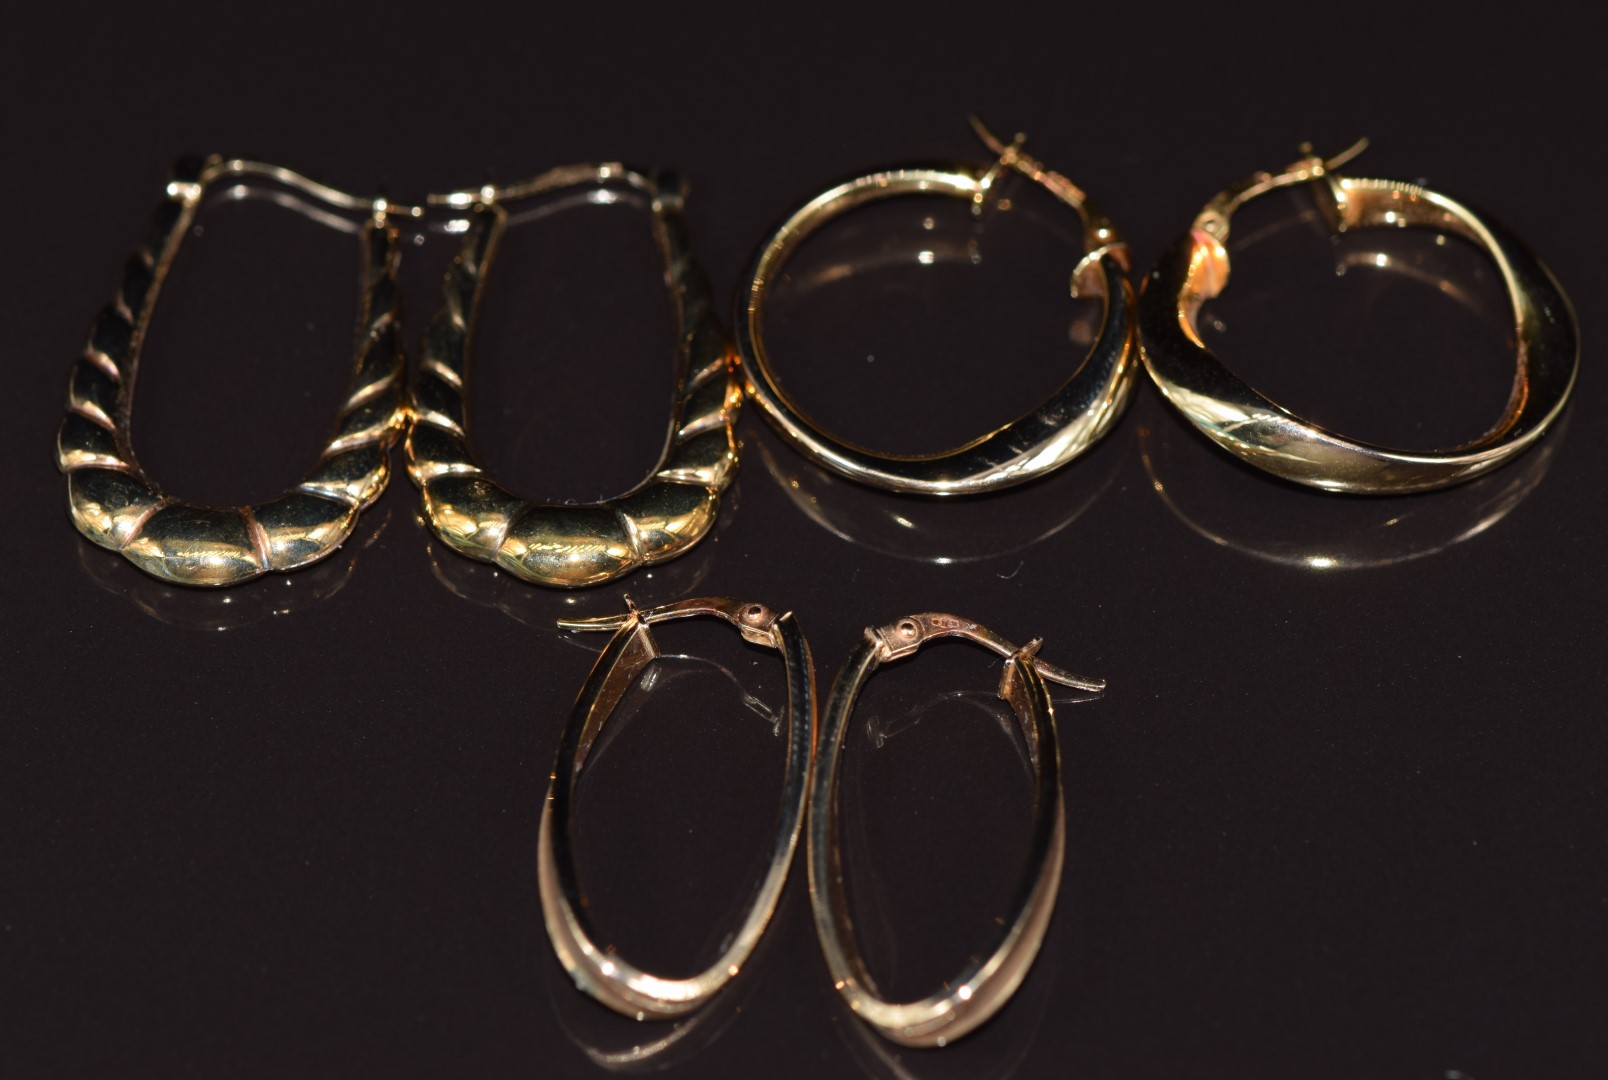 Three pairs of 9ct gold hoop earrings, 4.7g